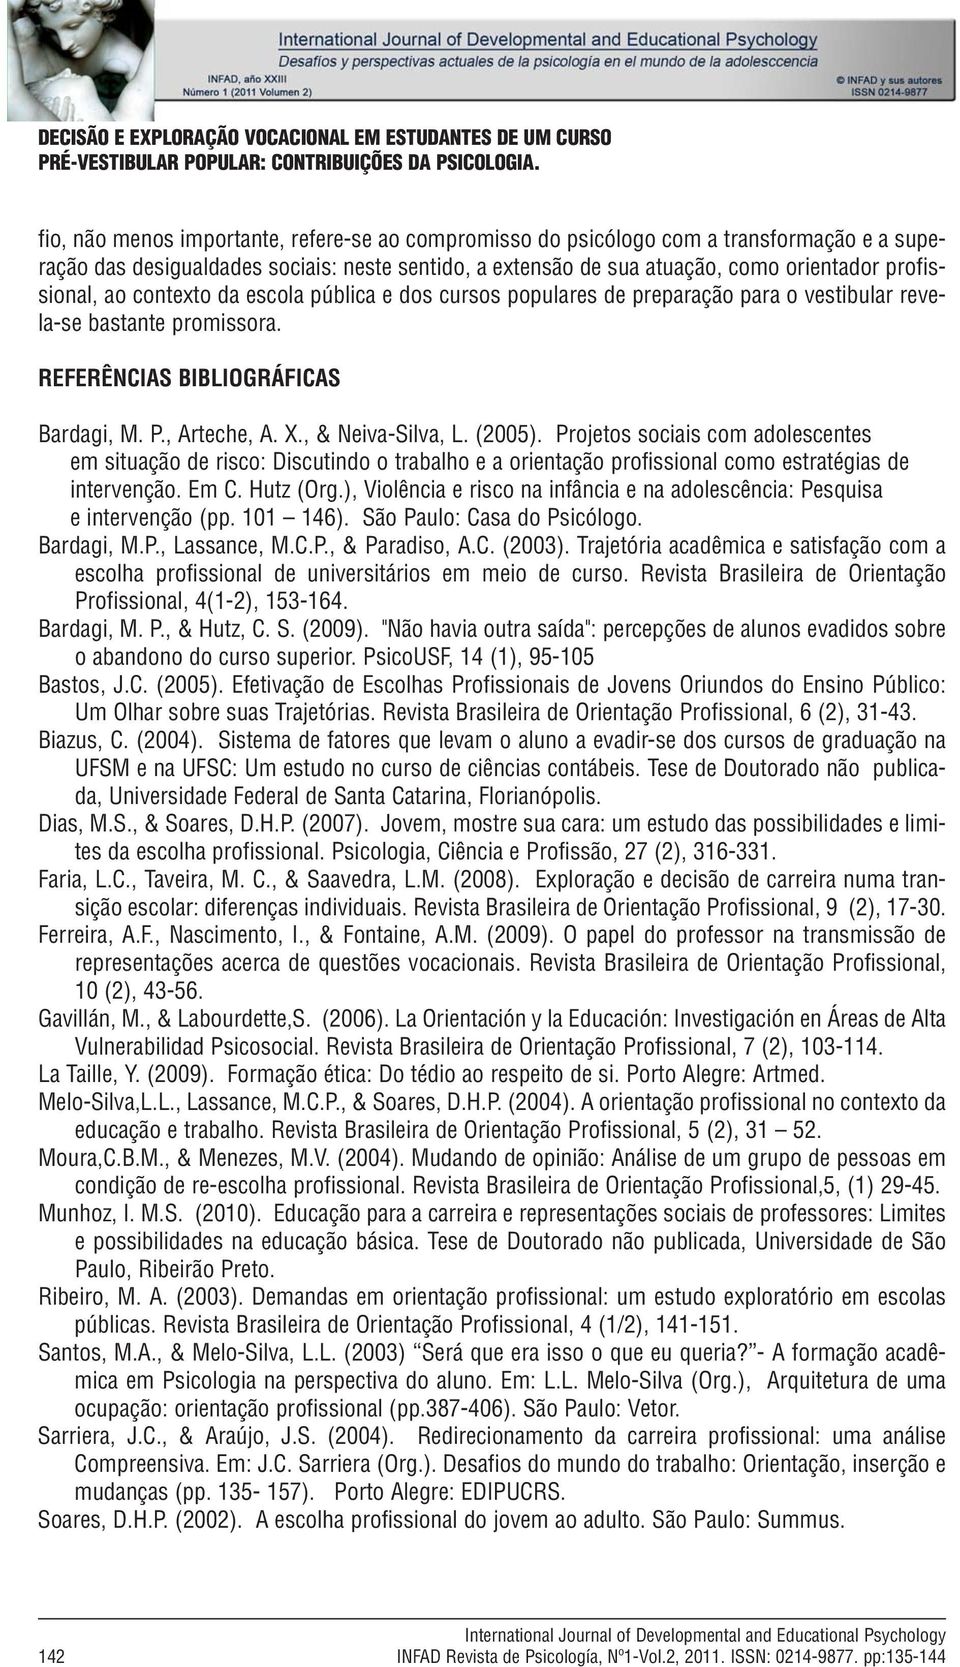 ao contexto da escola pública e dos cursos populares de preparação para o vestibular revela-se bastante promissora. REFERÊNCIAS BIBLIOGRÁFICAS Bardagi, M. P., Arteche, A. X., & Neiva-Silva, L. (2005).